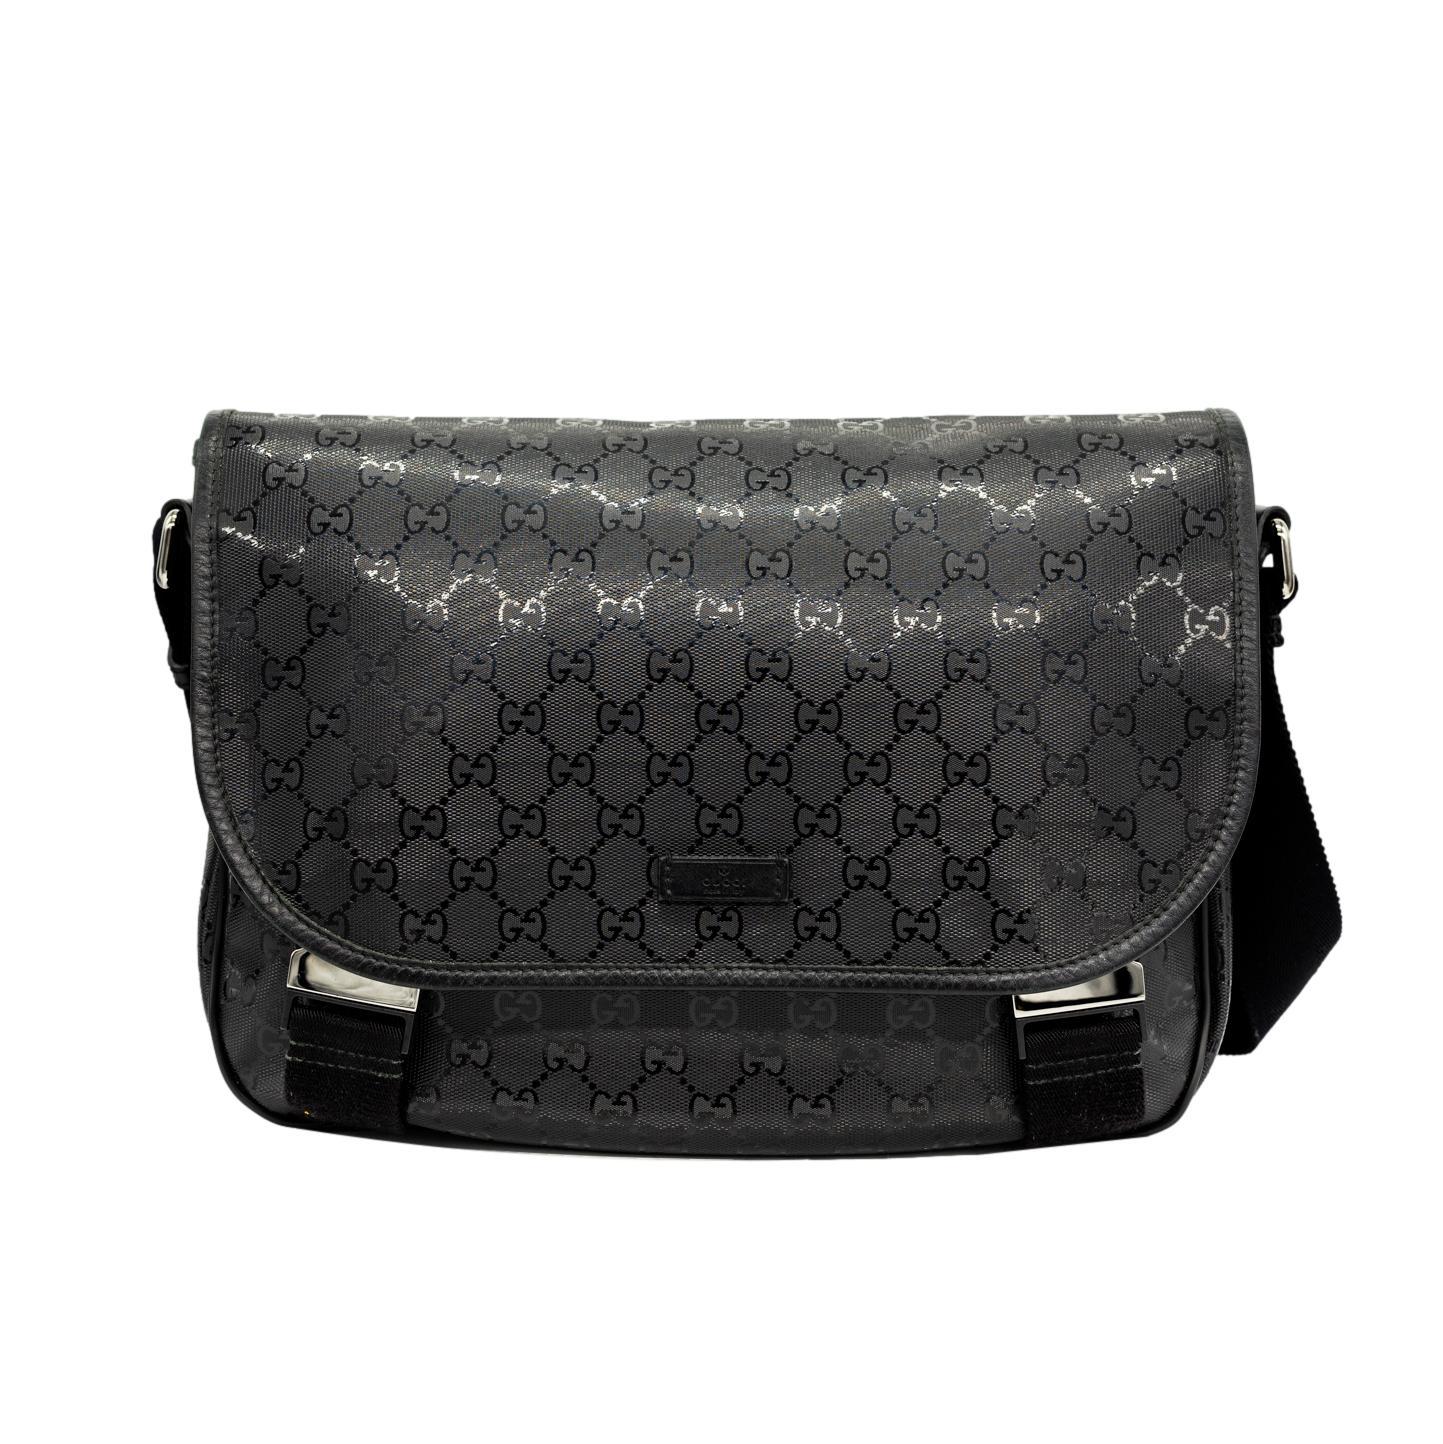 Gucci Glazed Black GG Supreme Canvas Medium Crossbody Unisex Messenger Bag. Diese klassische Gucci Messenger Bag wurde in Handarbeit aus hochwertigem schwarzem GG